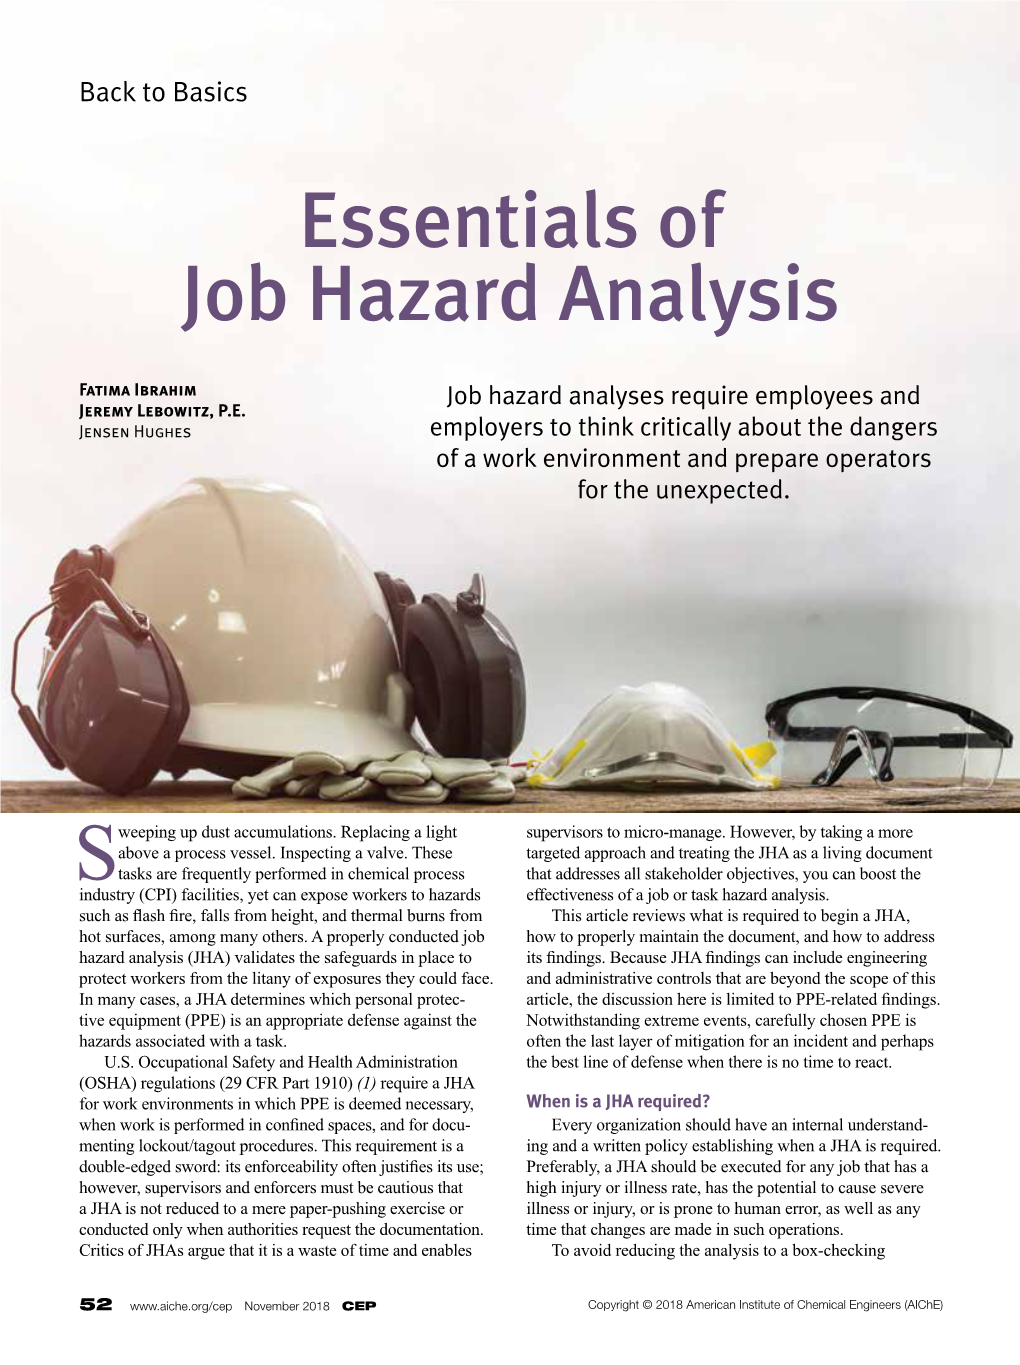 Essentials of Job Hazard Analysis